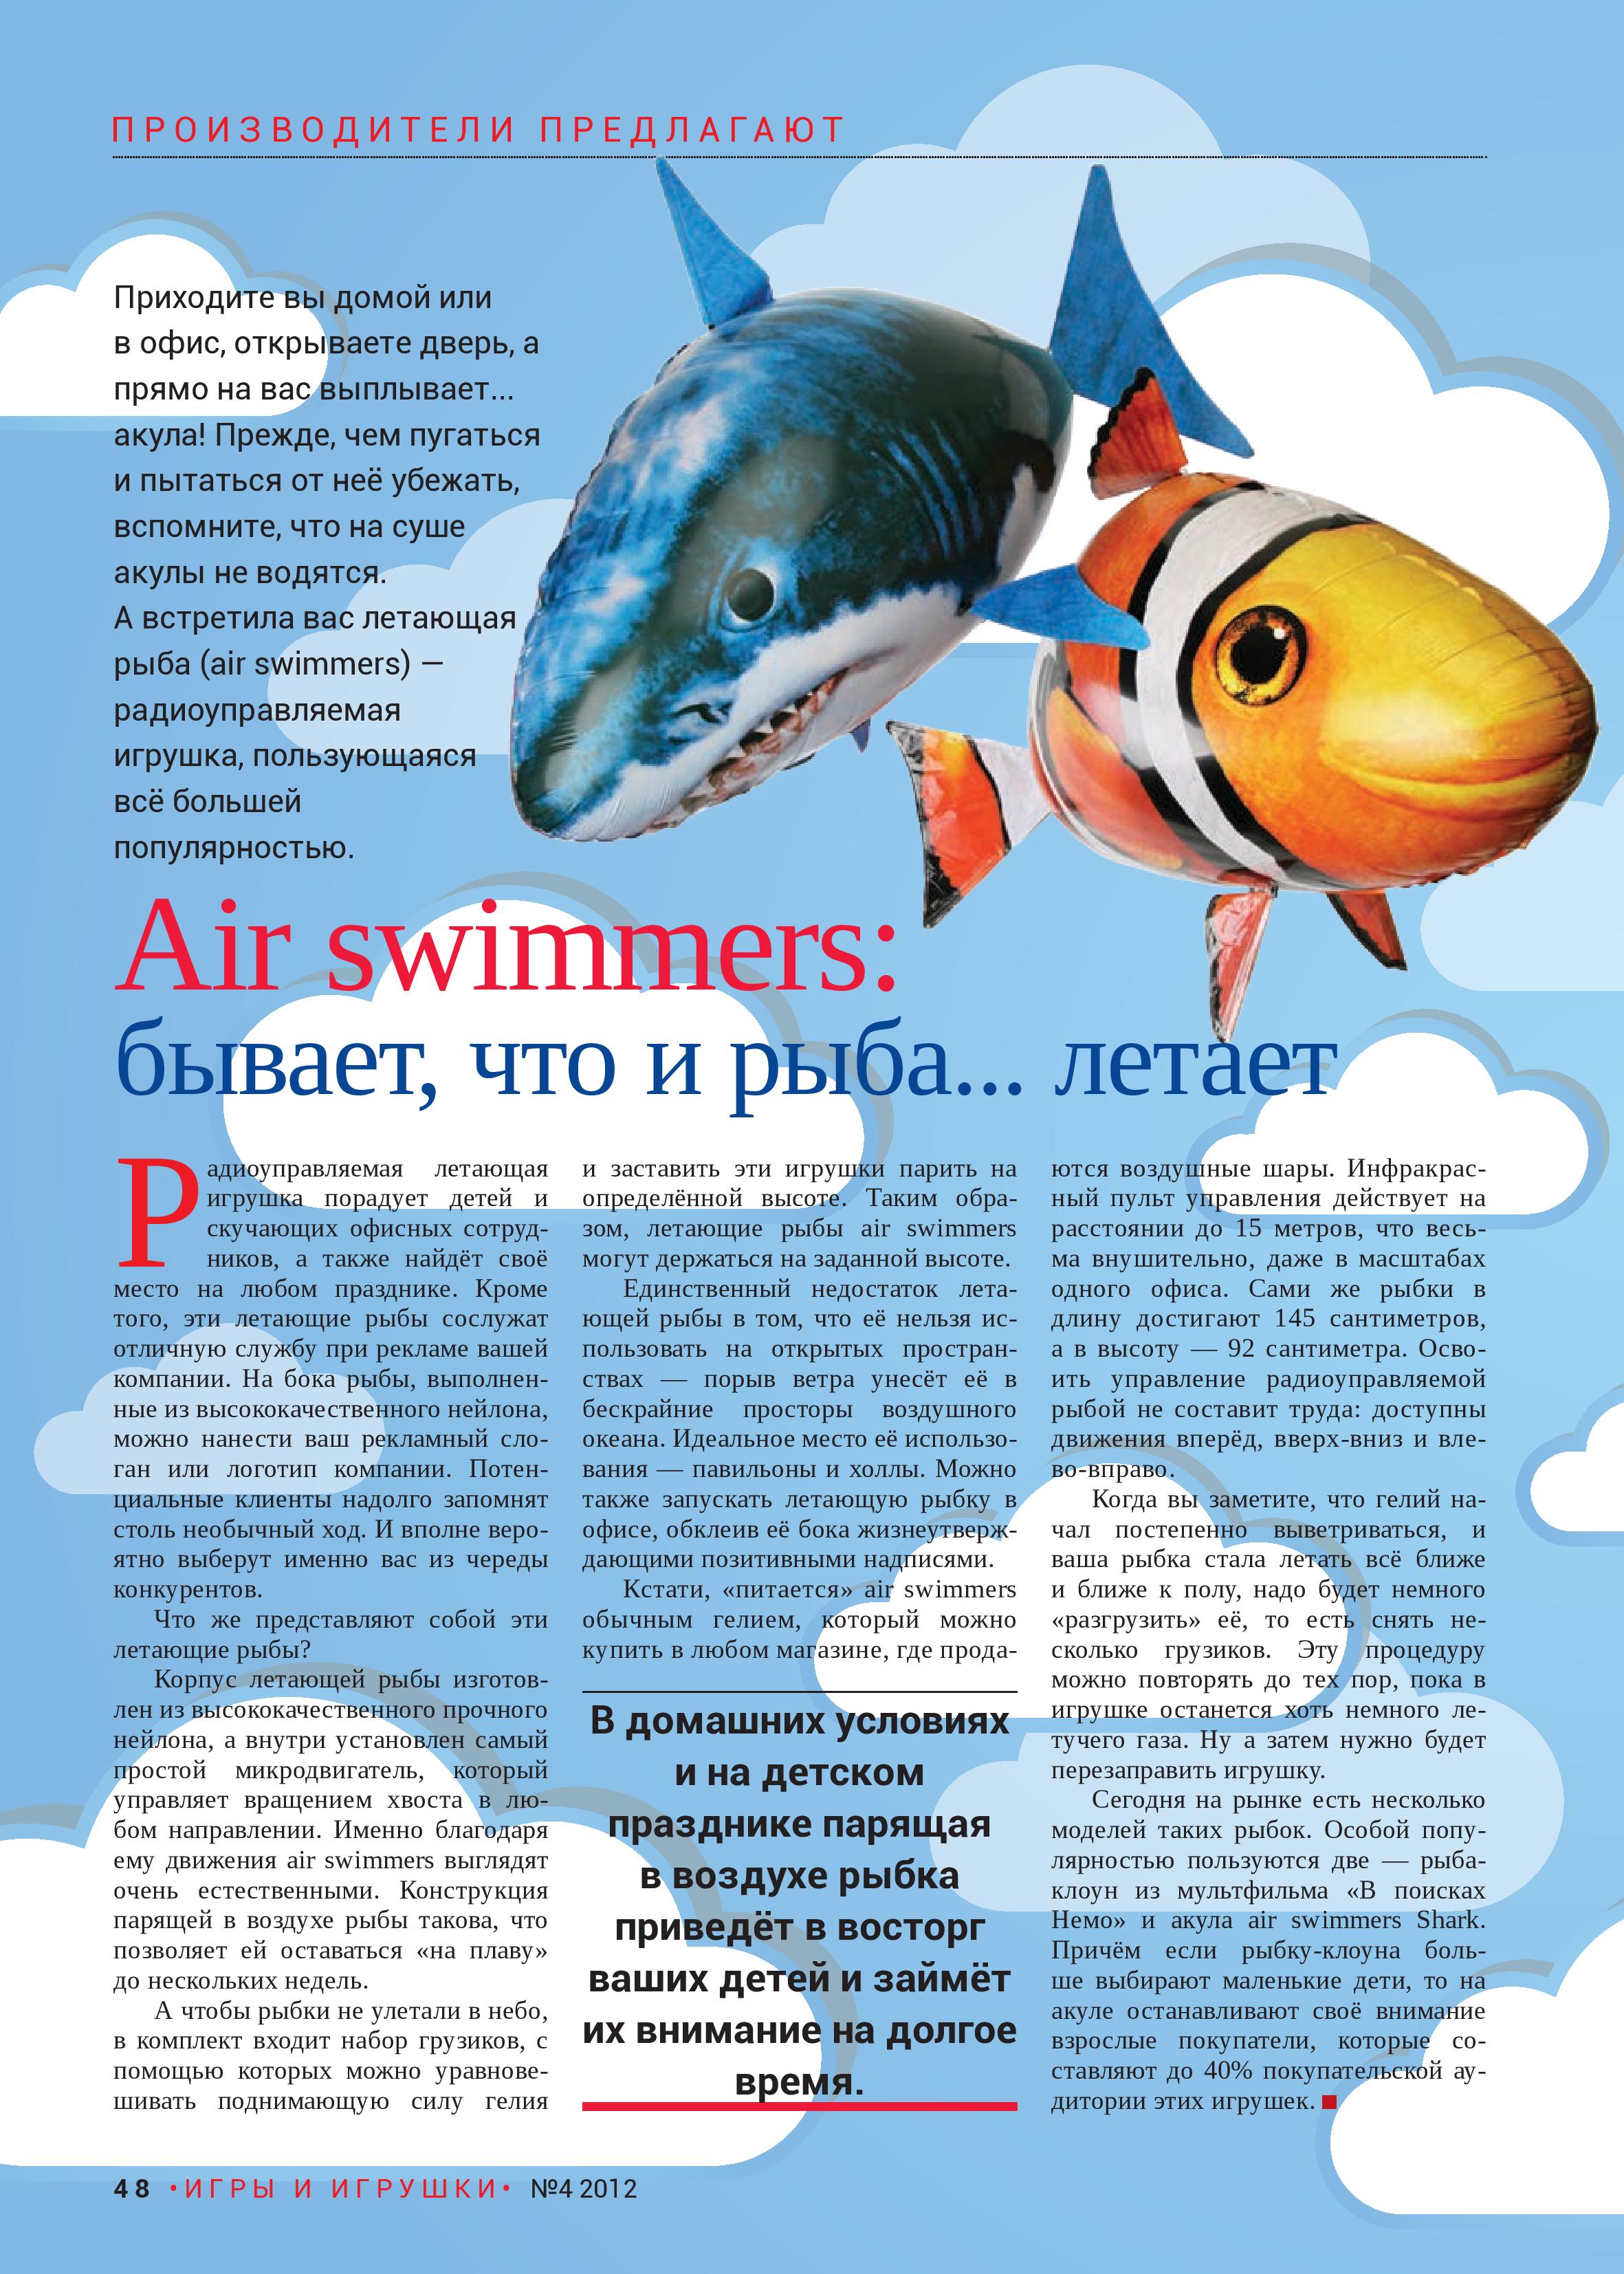 Air swimmers: бывает, что и рыба… летает